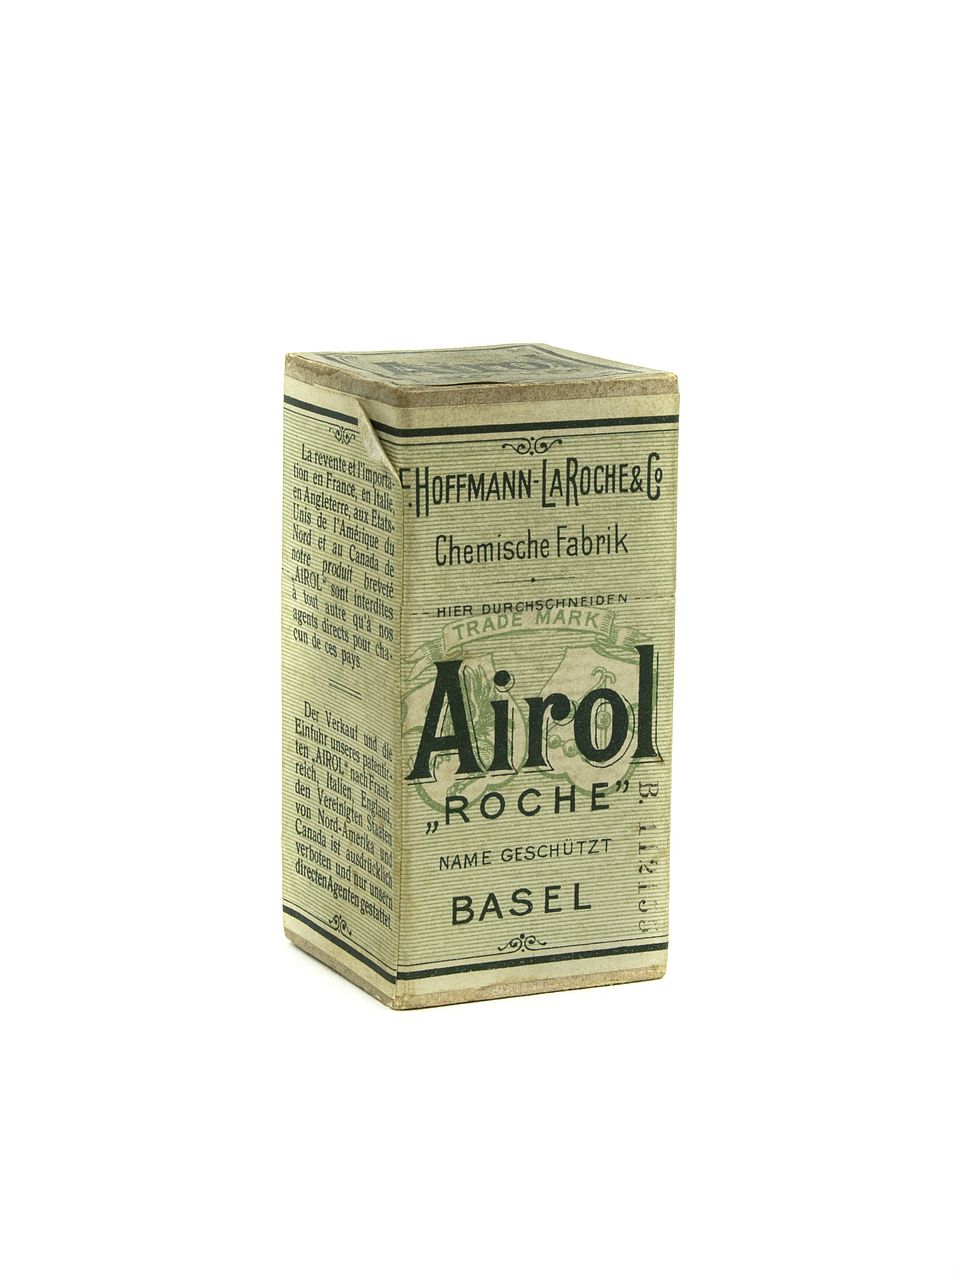 Airol, Pharmaziemuseum Basel